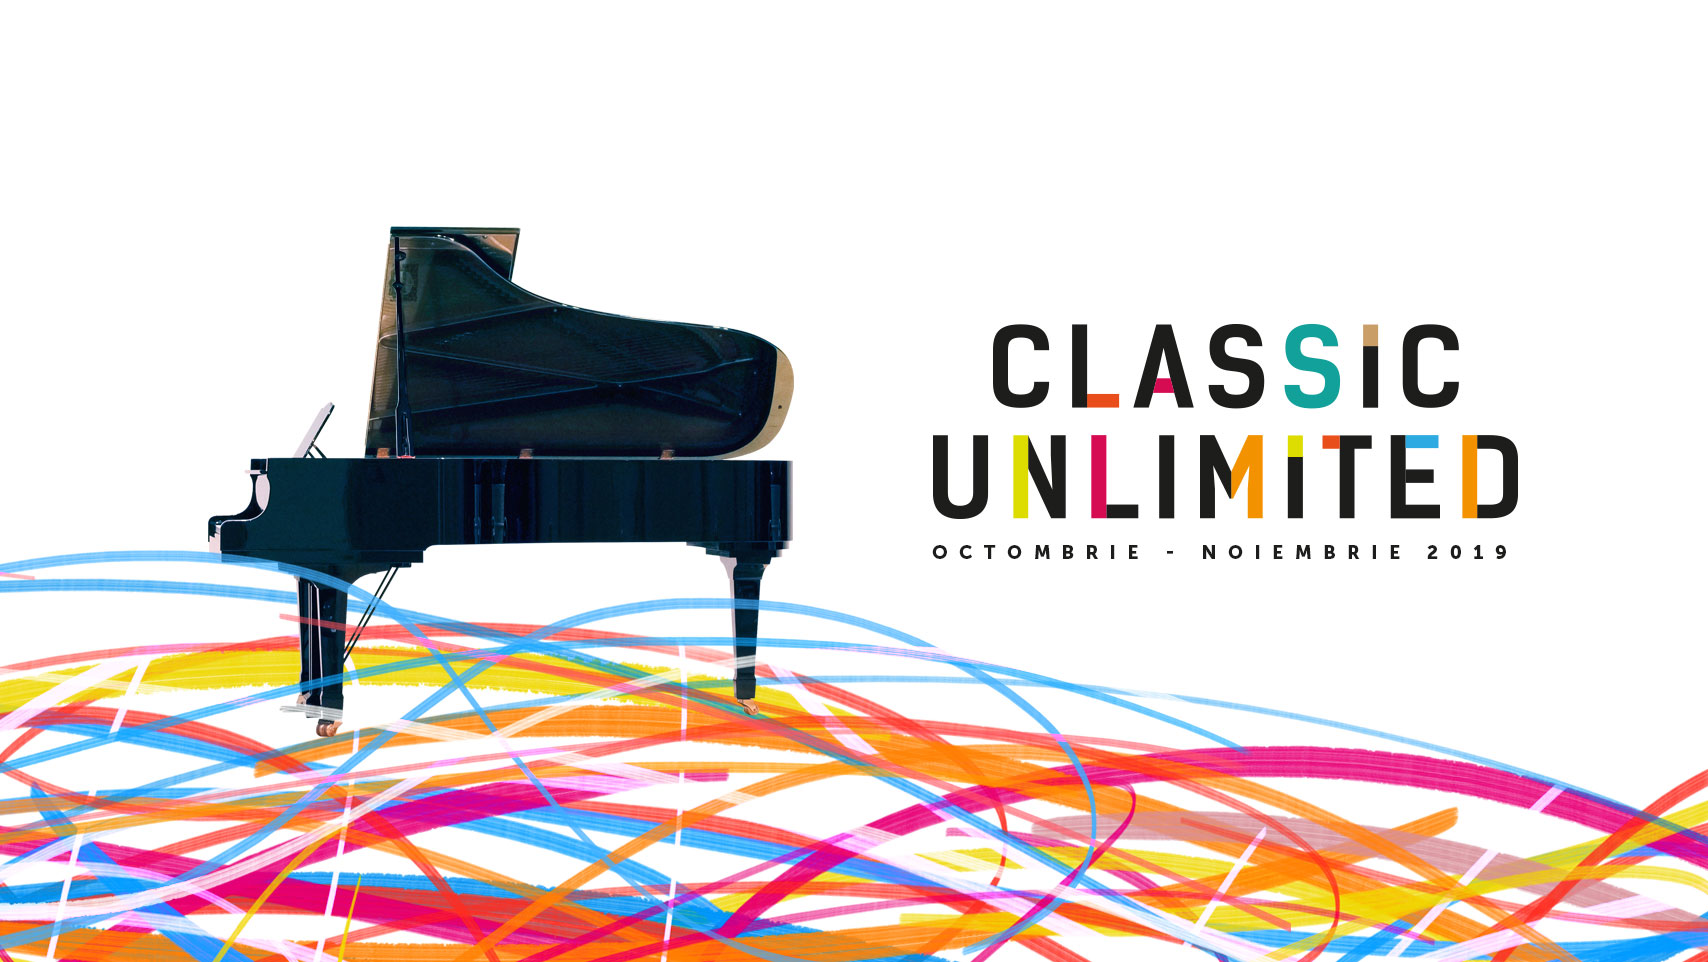 Concertele Classic Unlimited încep o nouă călătorie prin țară la sfârșitul lunii octombrie